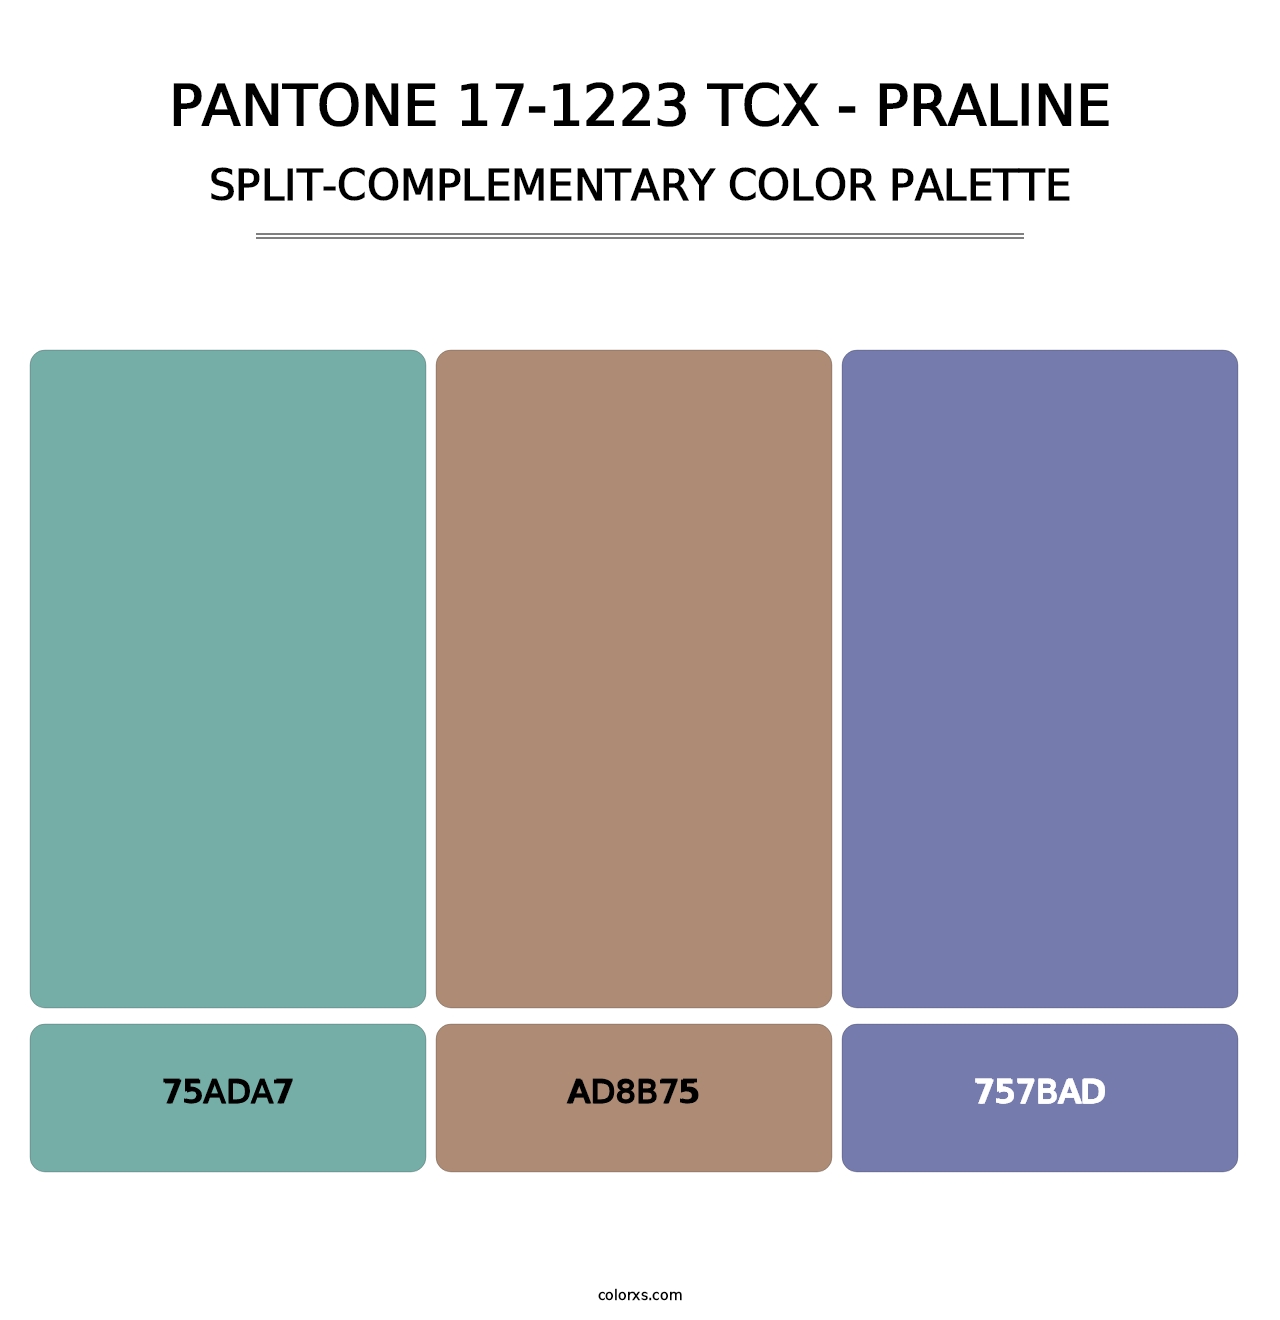 PANTONE 17-1223 TCX - Praline - Split-Complementary Color Palette